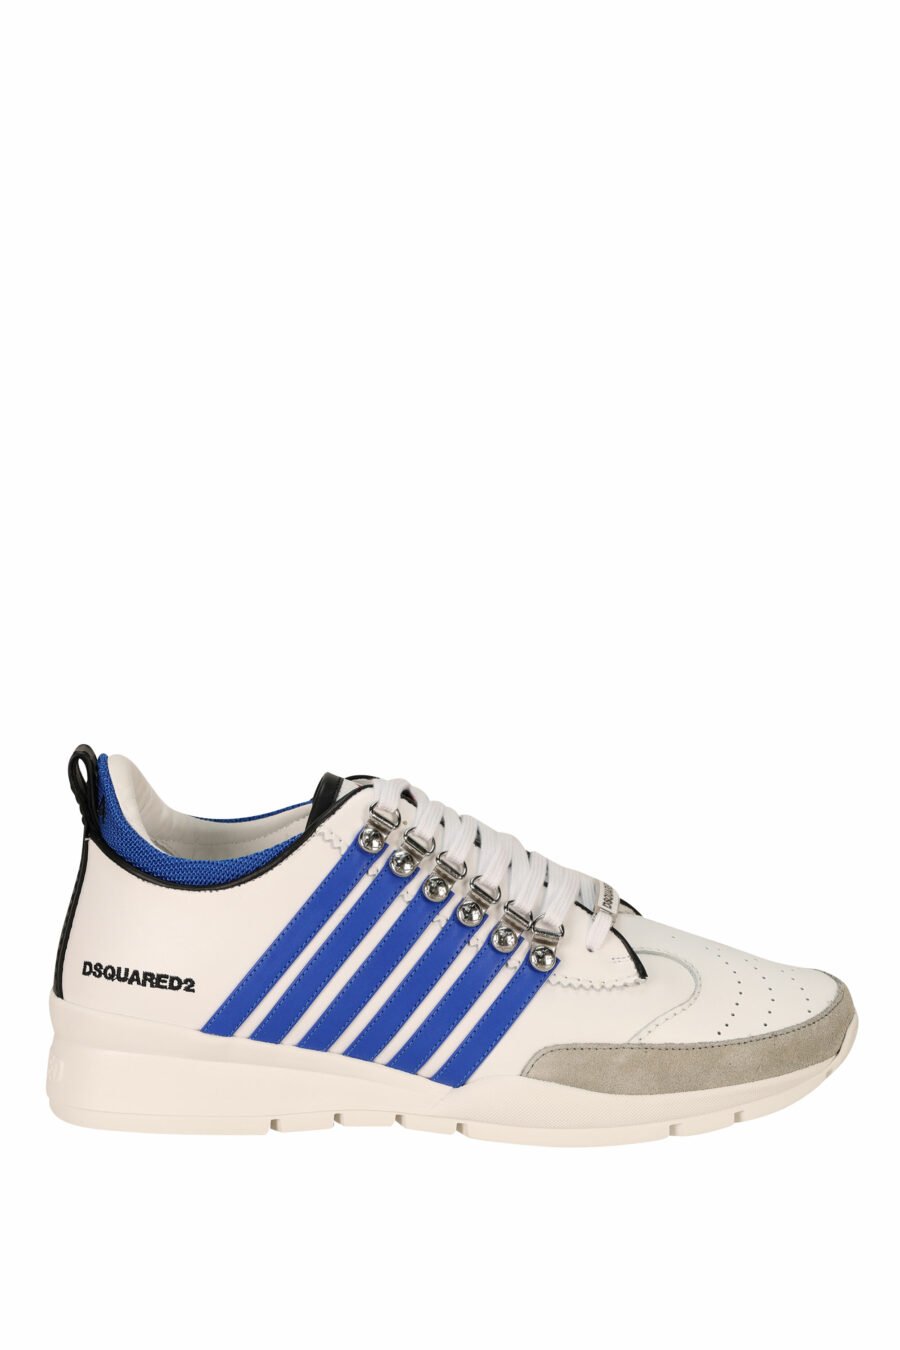 Zapatillas blancas con lineas azules y suela blanca - 8055777301036